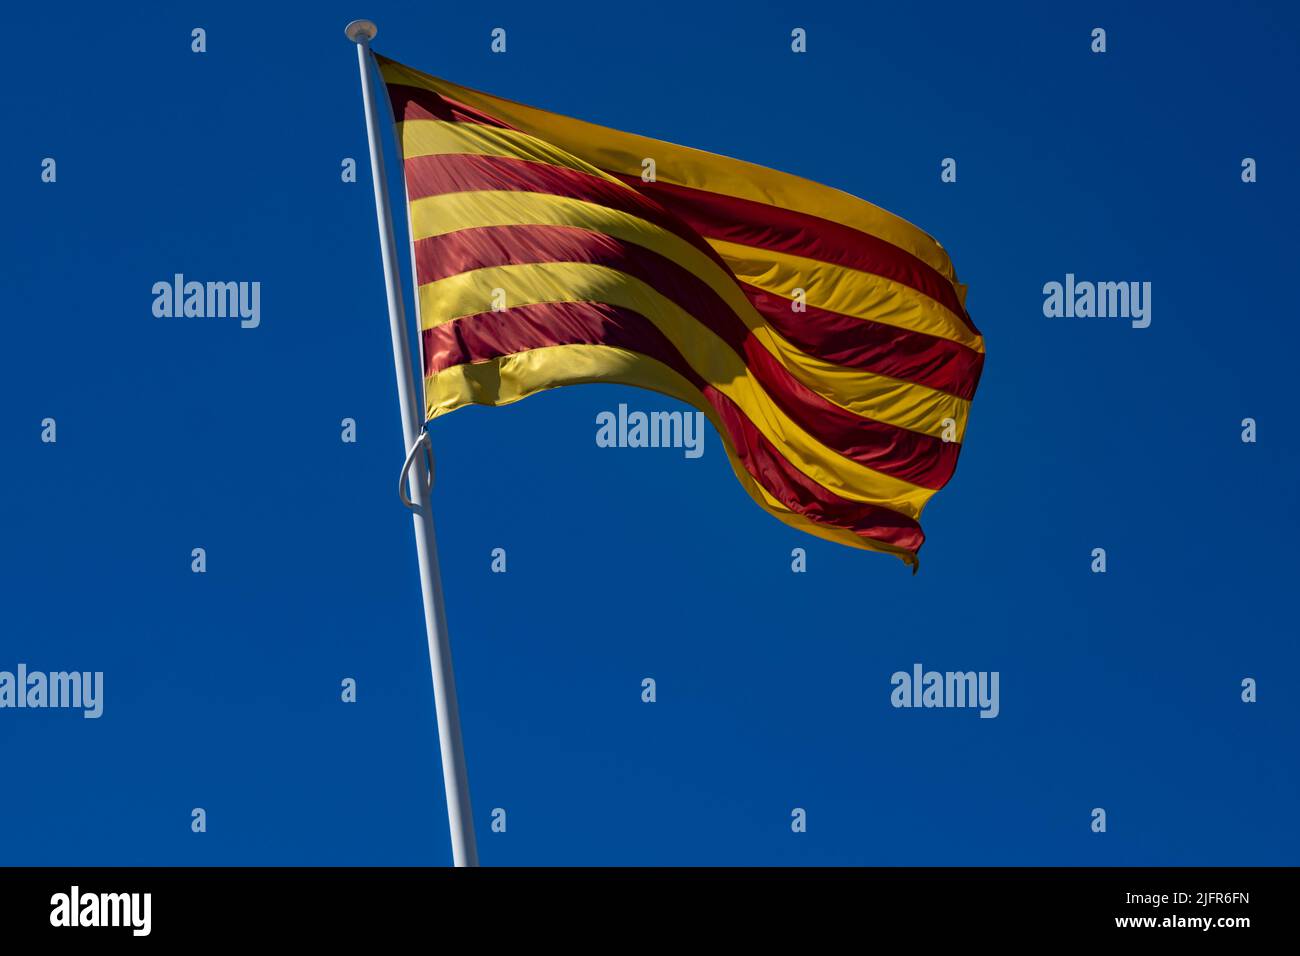 La bandiera della Catalogna (Comunità autonoma di Spagna) che sventola in un cielo blu profondo. Asta inclinata verso sinistra. Foto Stock